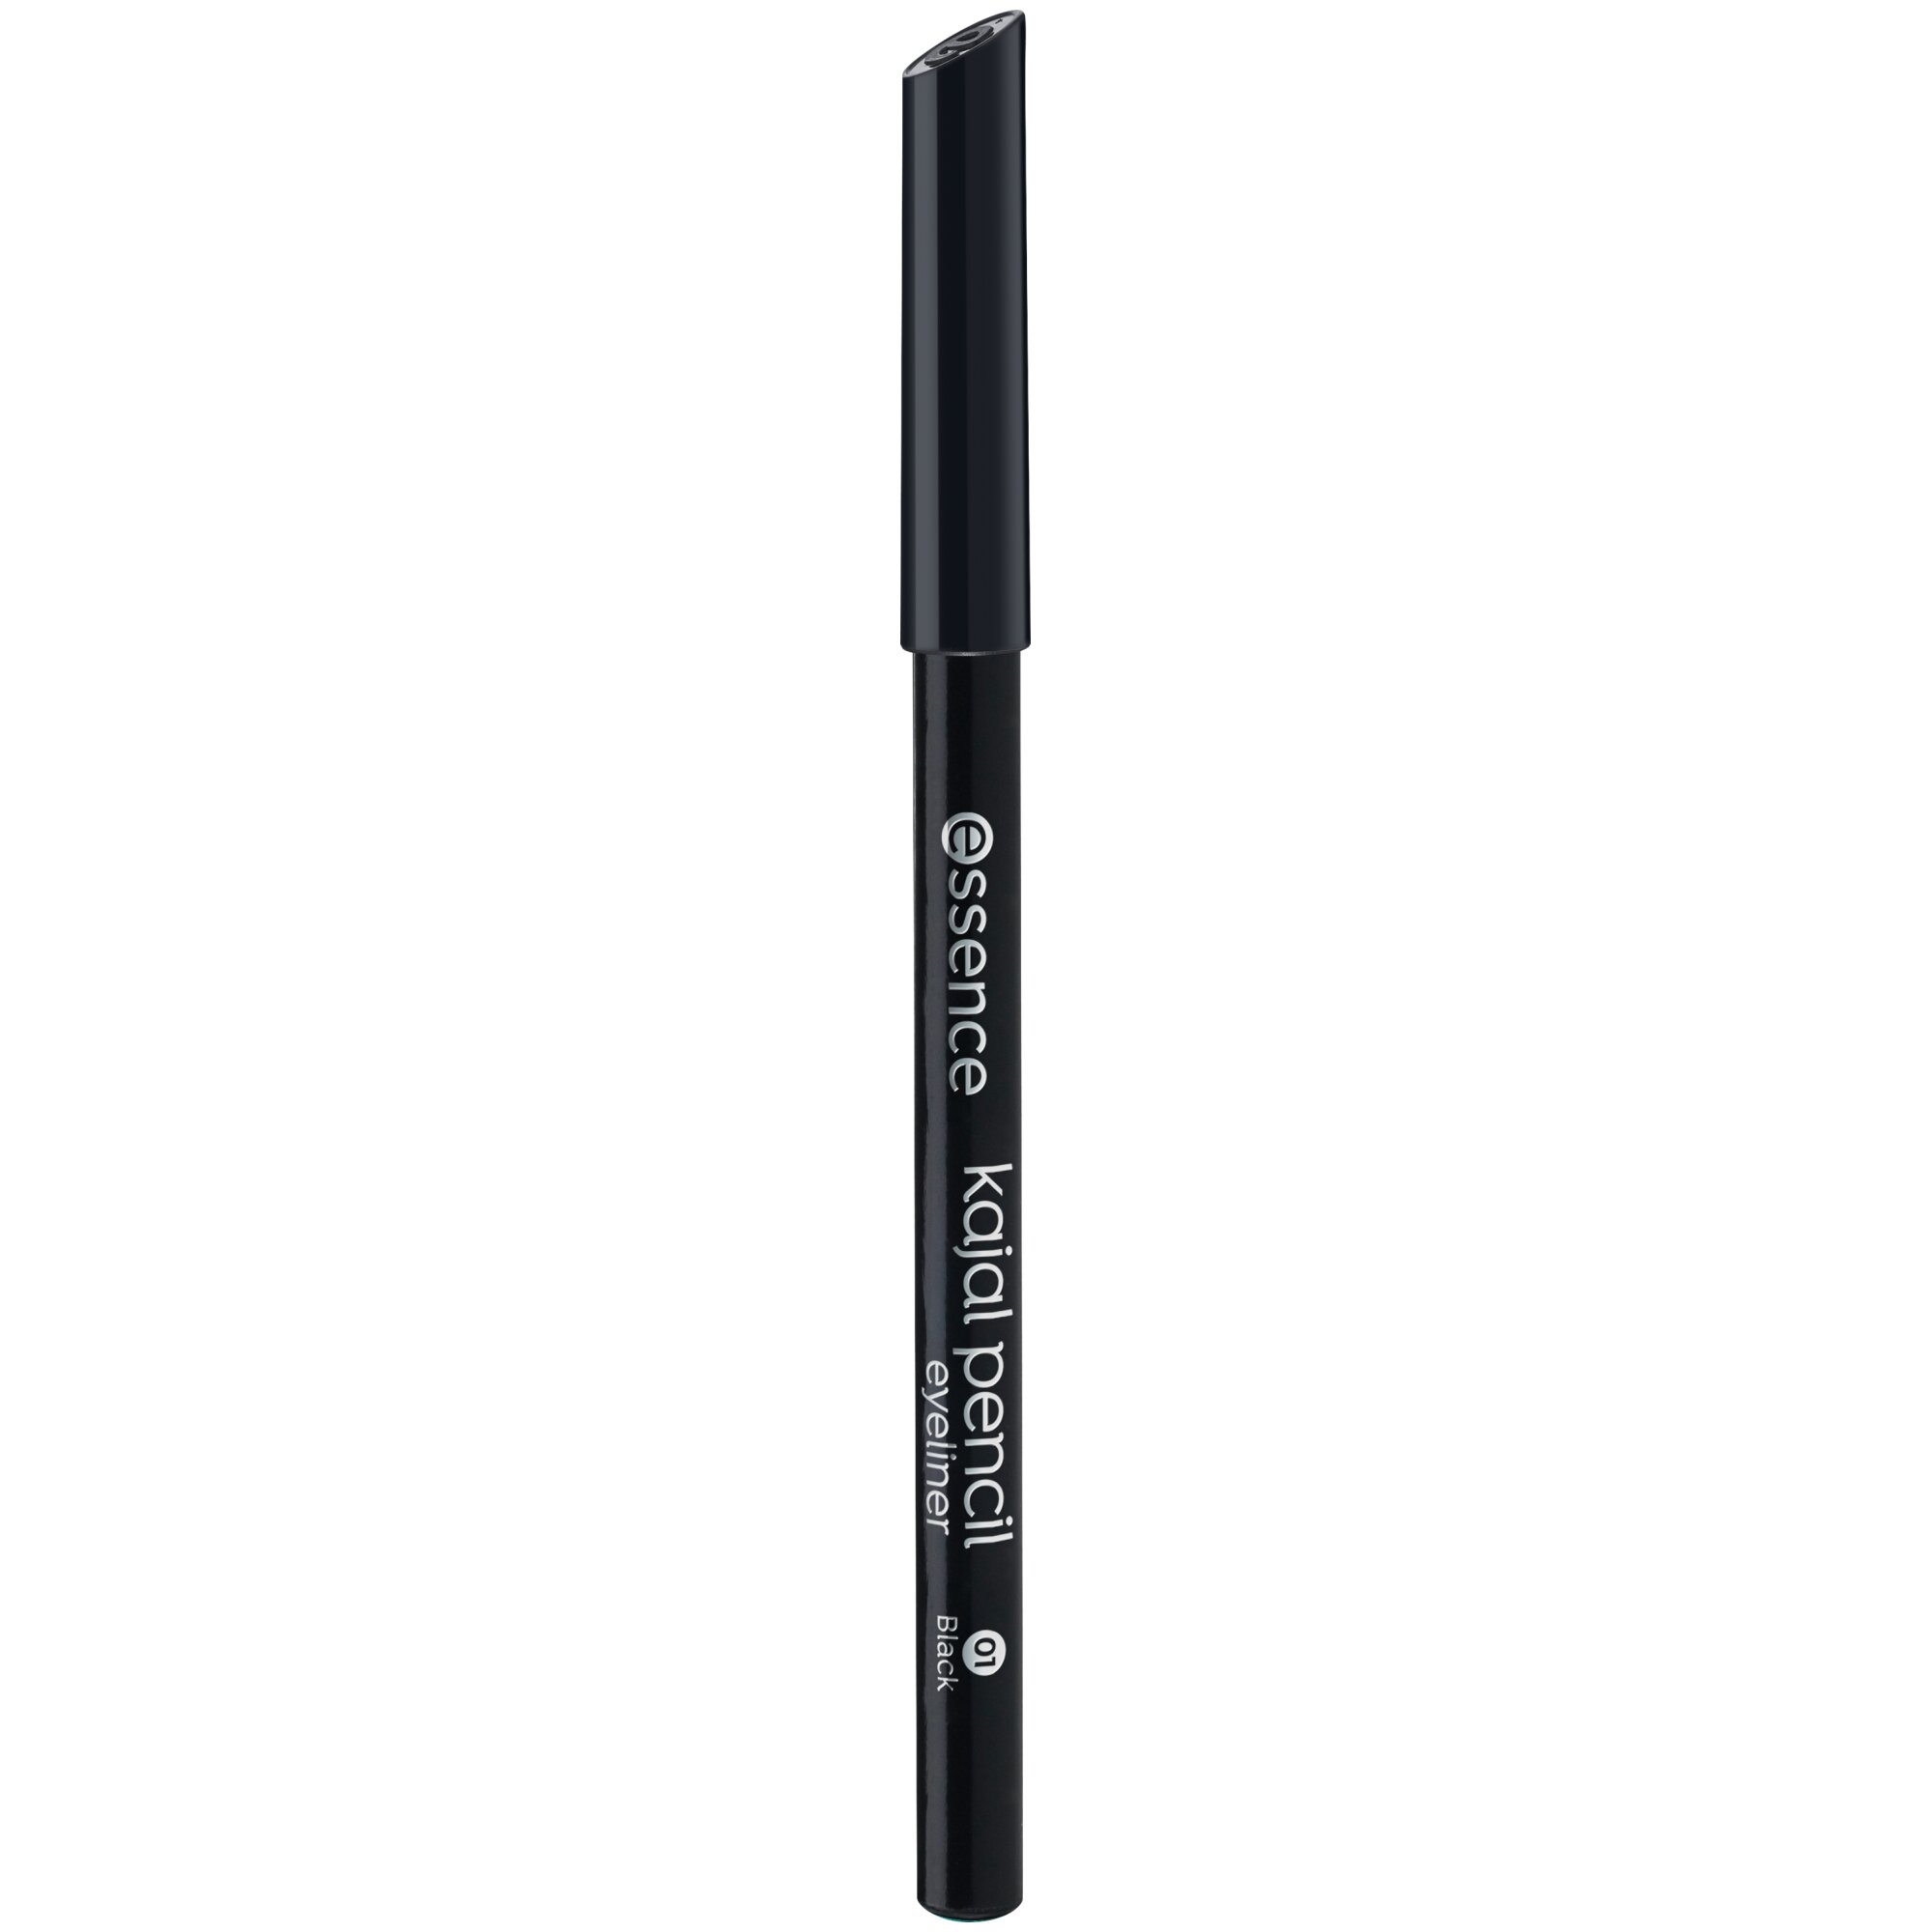 Creion pentru ochi Kajal Pencil, 01 - Black, 1 g, Essence